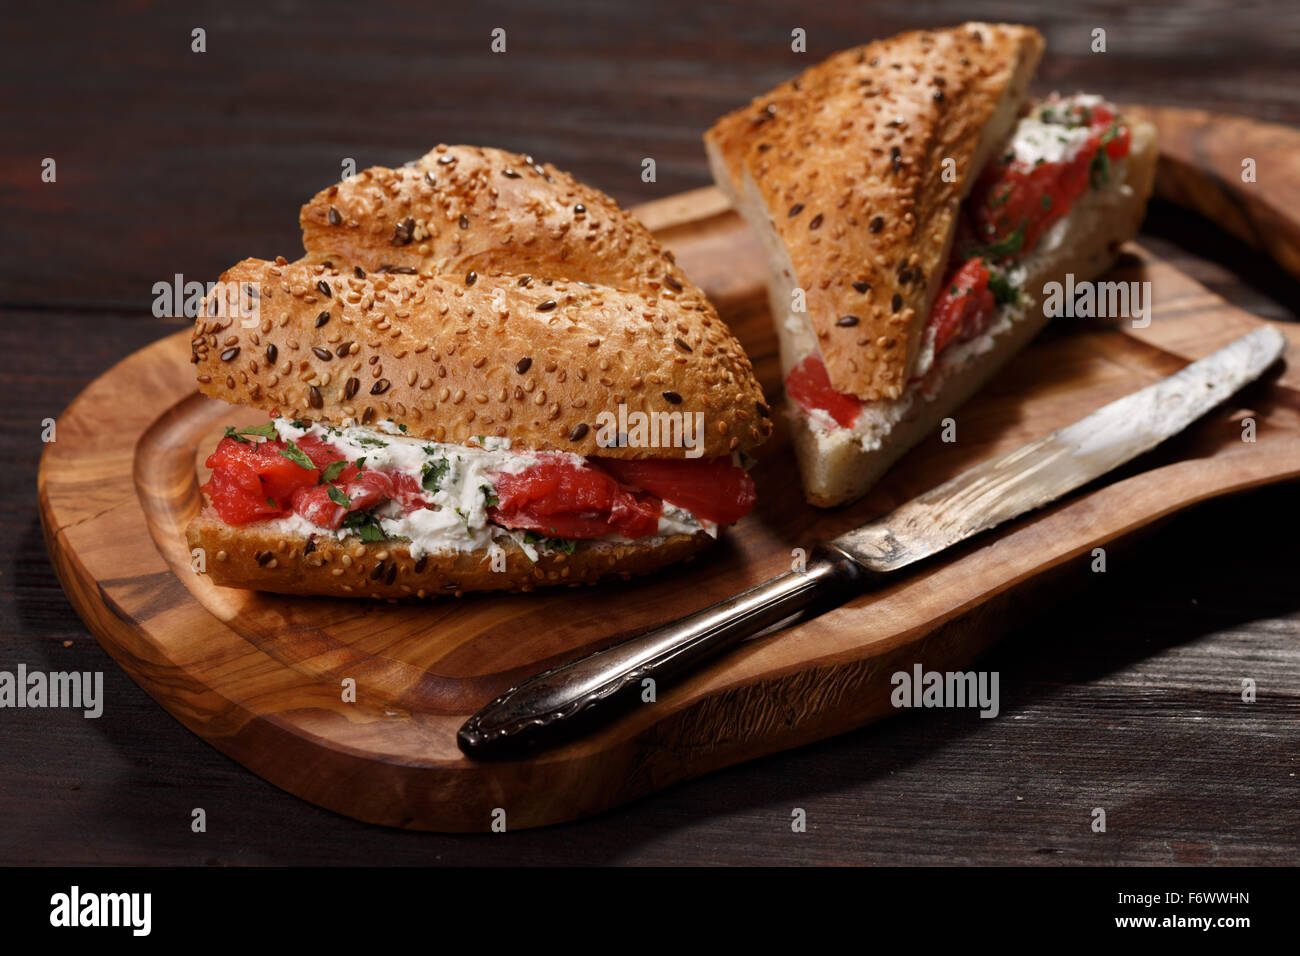 Sandwich di pane integrale con salmone, mite il formaggio cremoso e erbe aromatiche Foto Stock